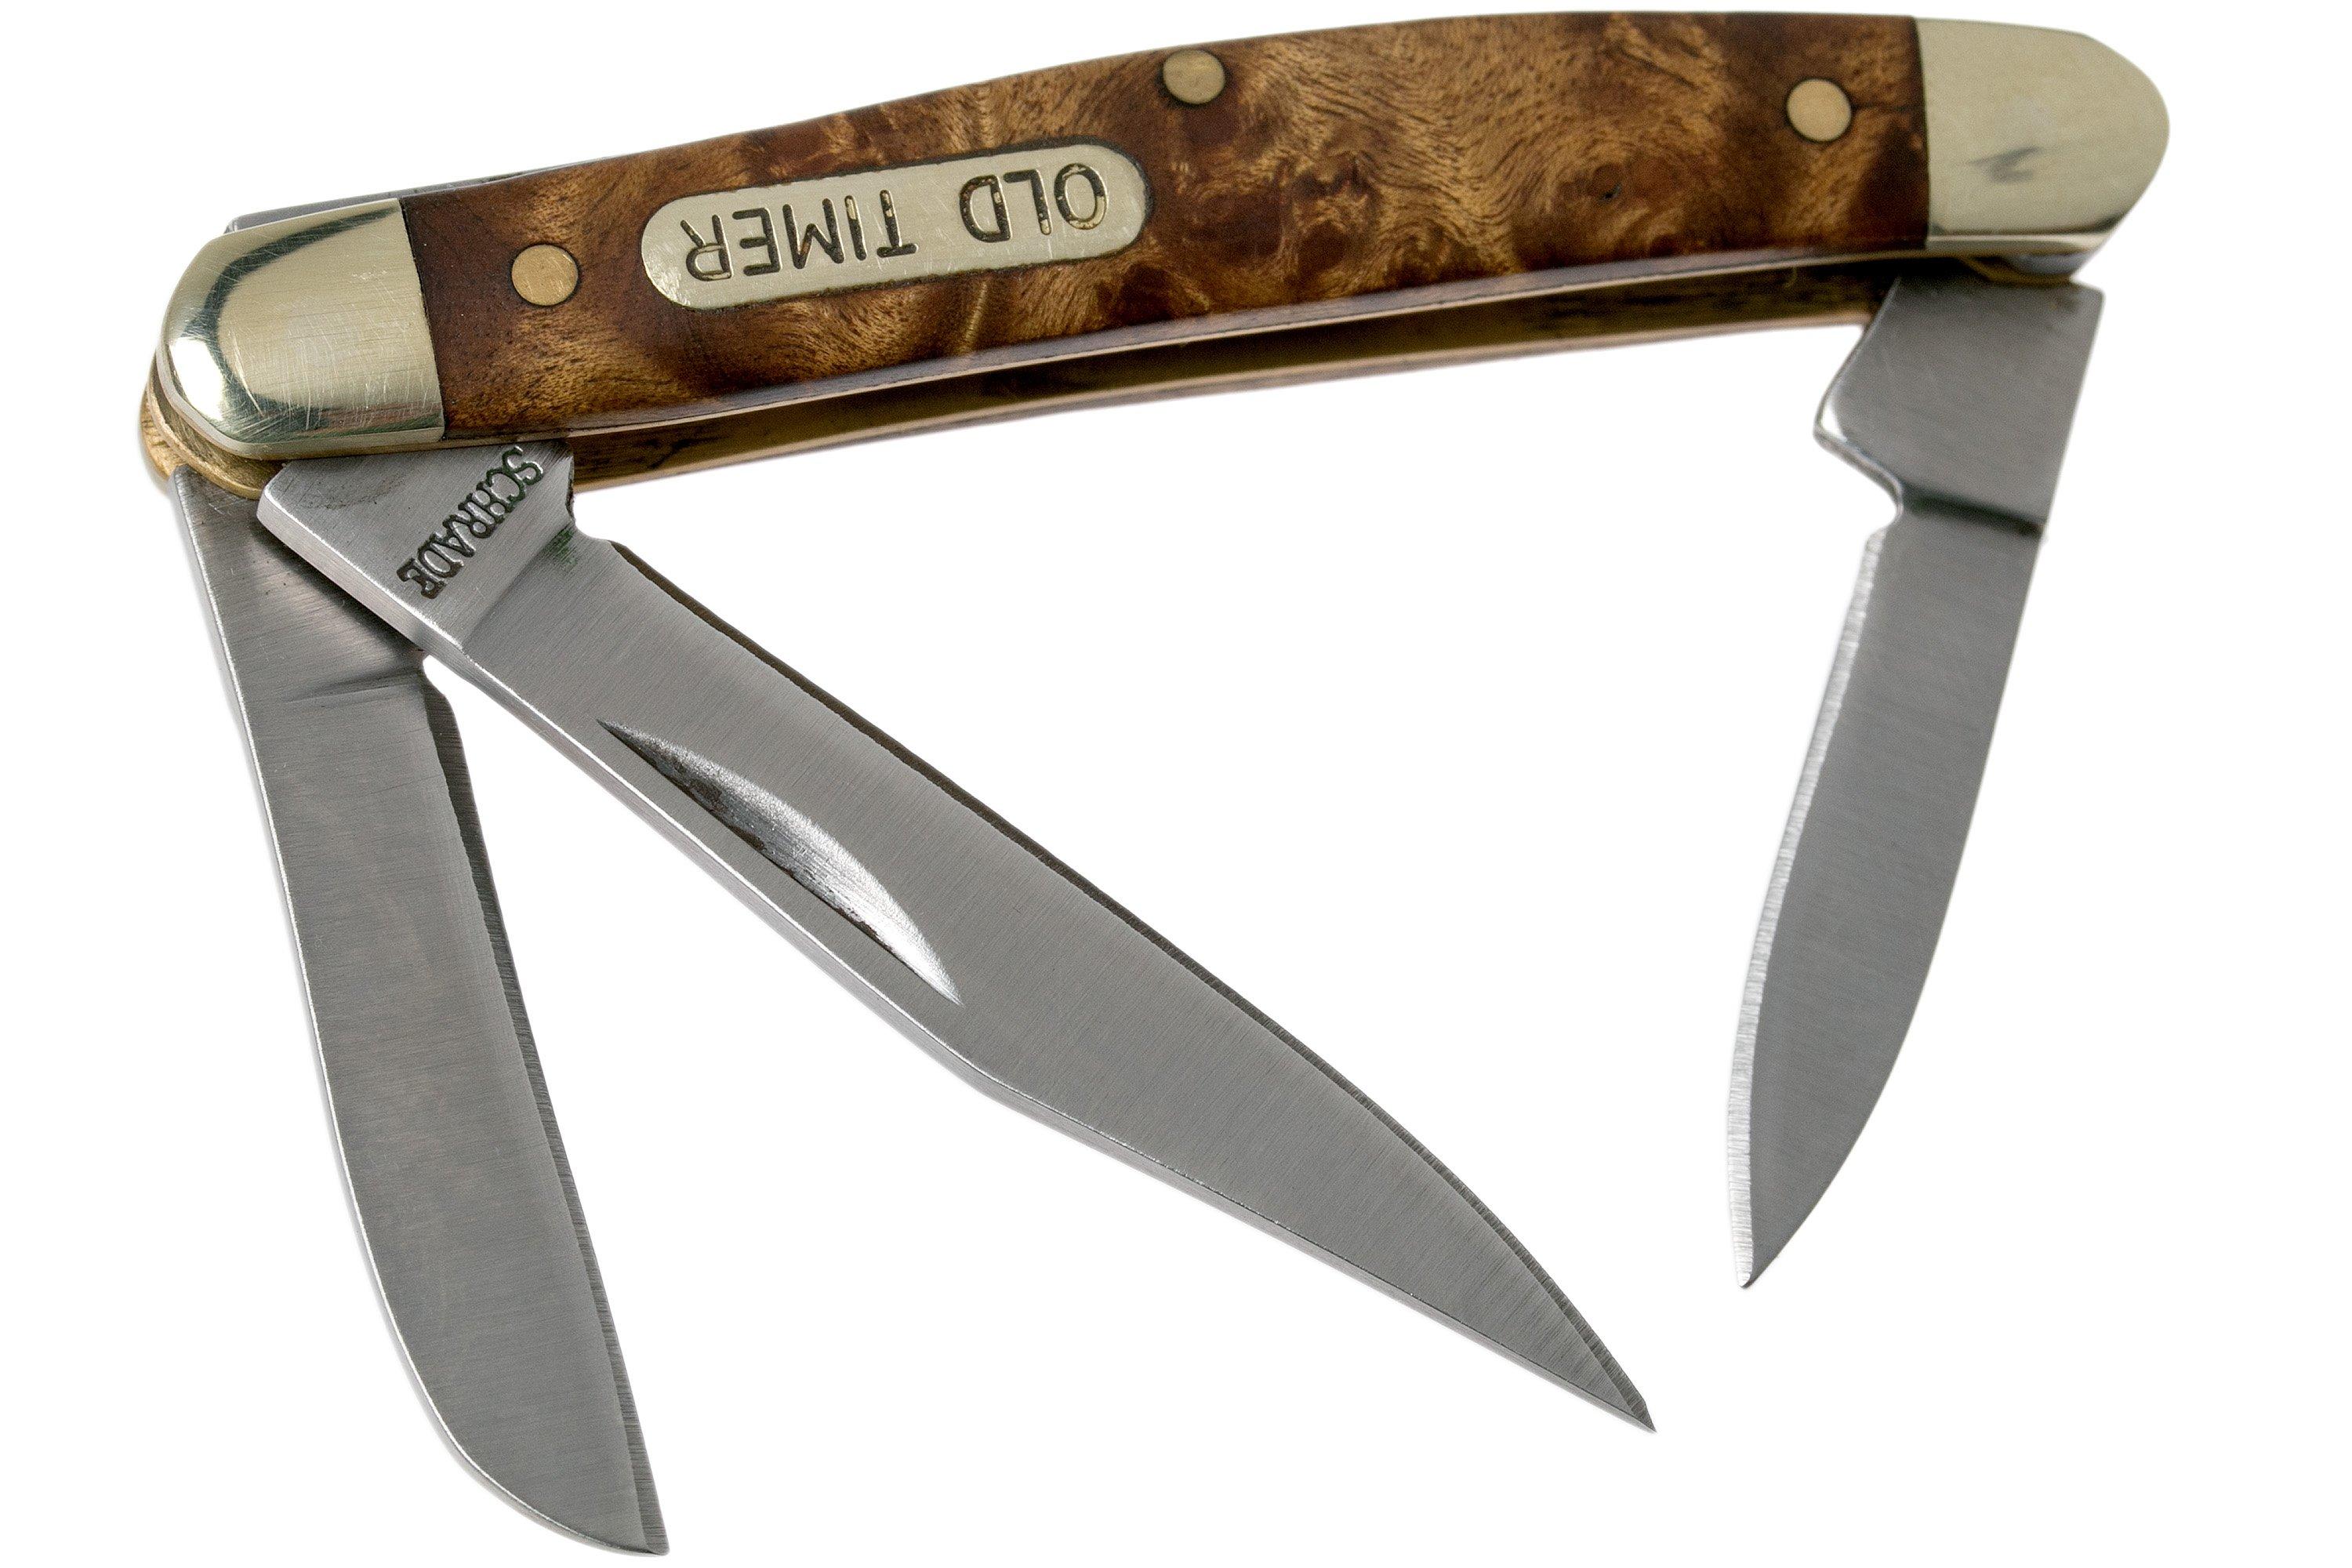 Schrade Old Timer 108OTW Pocket Knife with Wood Handle 3 Blades